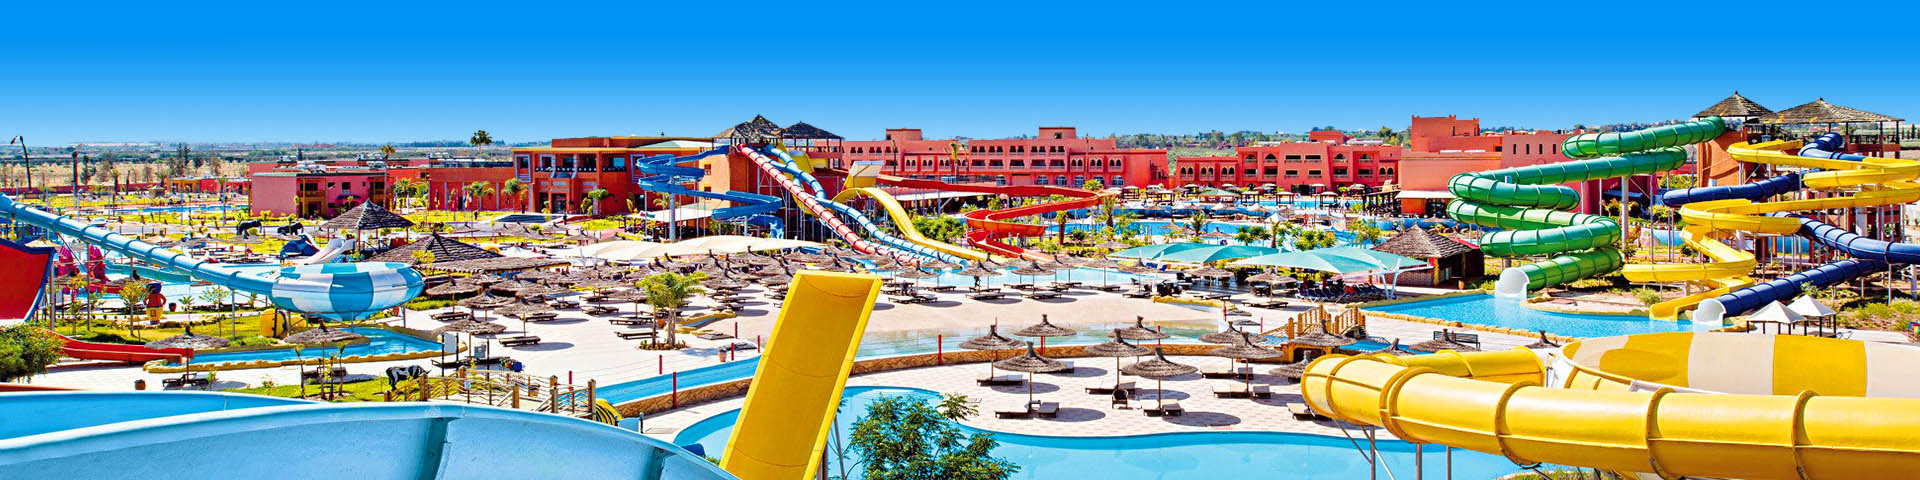 Hotel met waterpark in Marokko